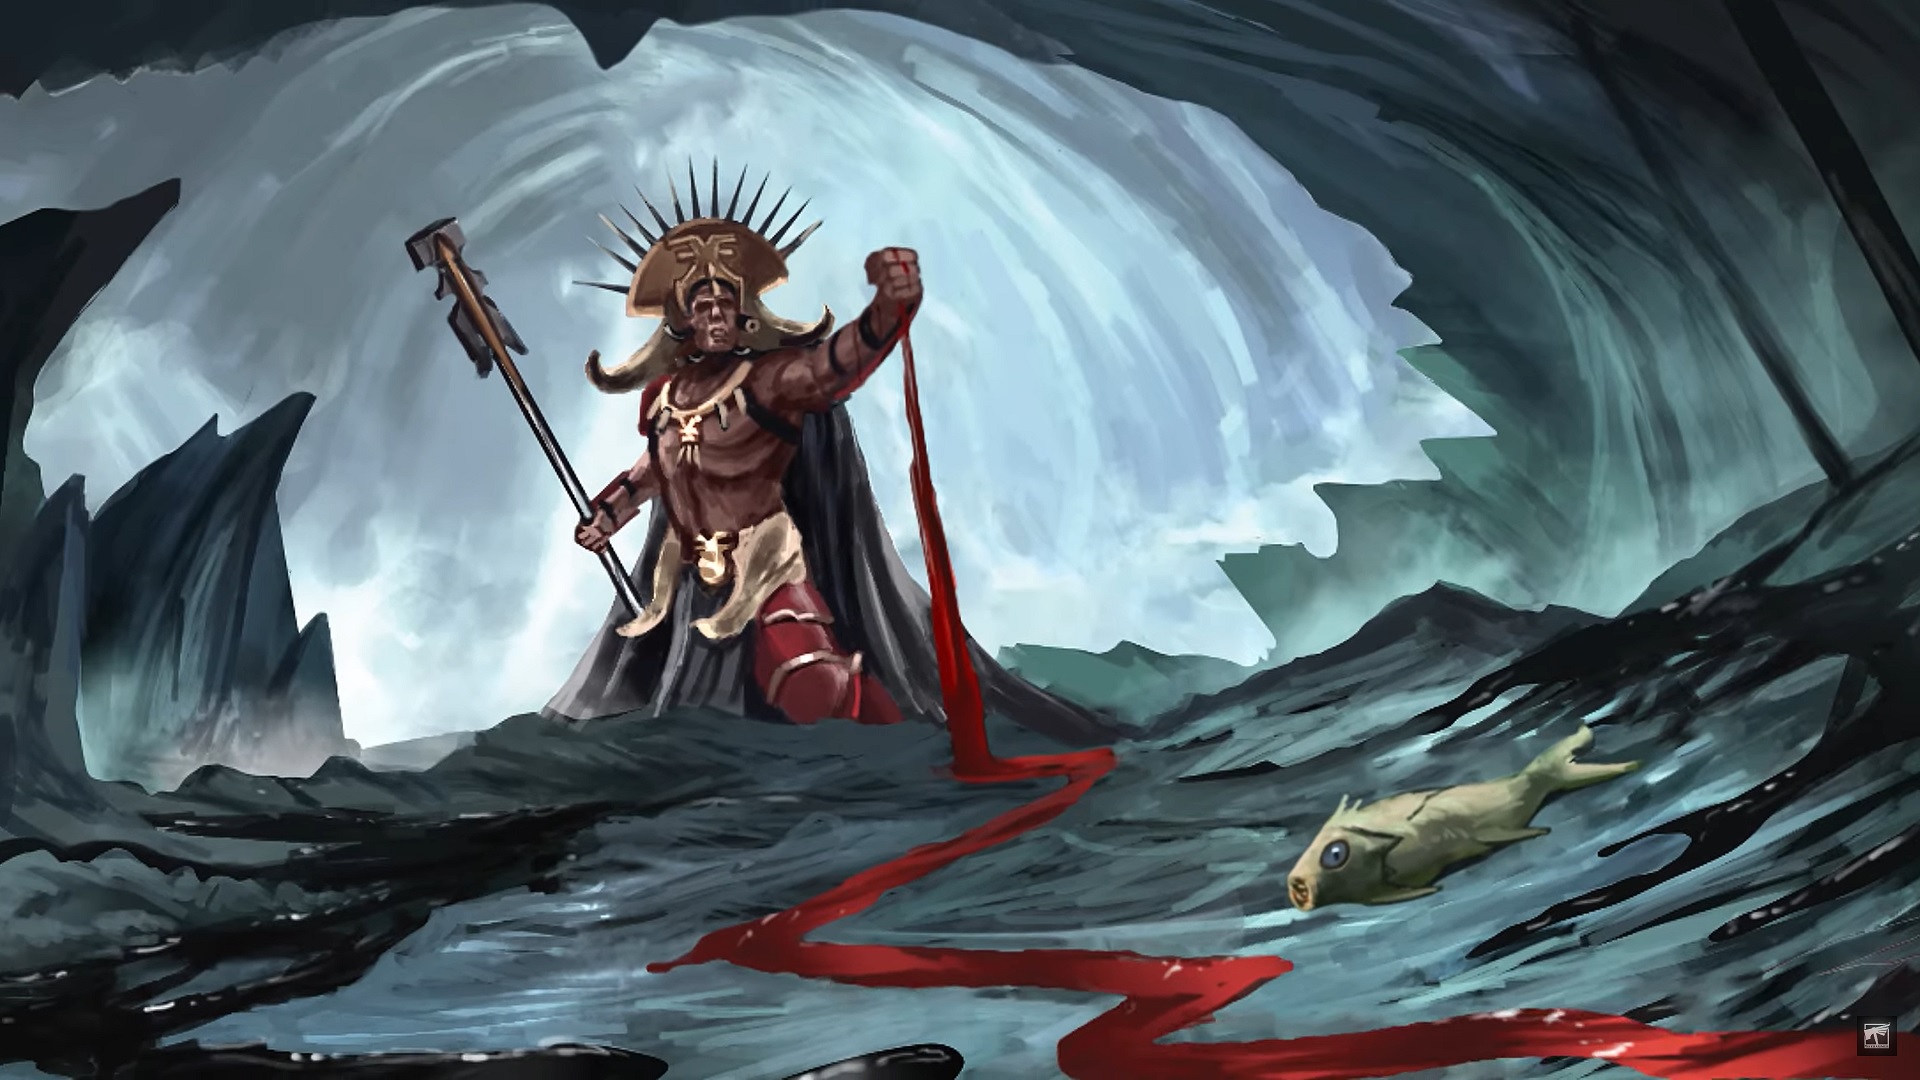 Warhammer Underworlds Hexbane's Hunters. Dromm watches the blood flow.